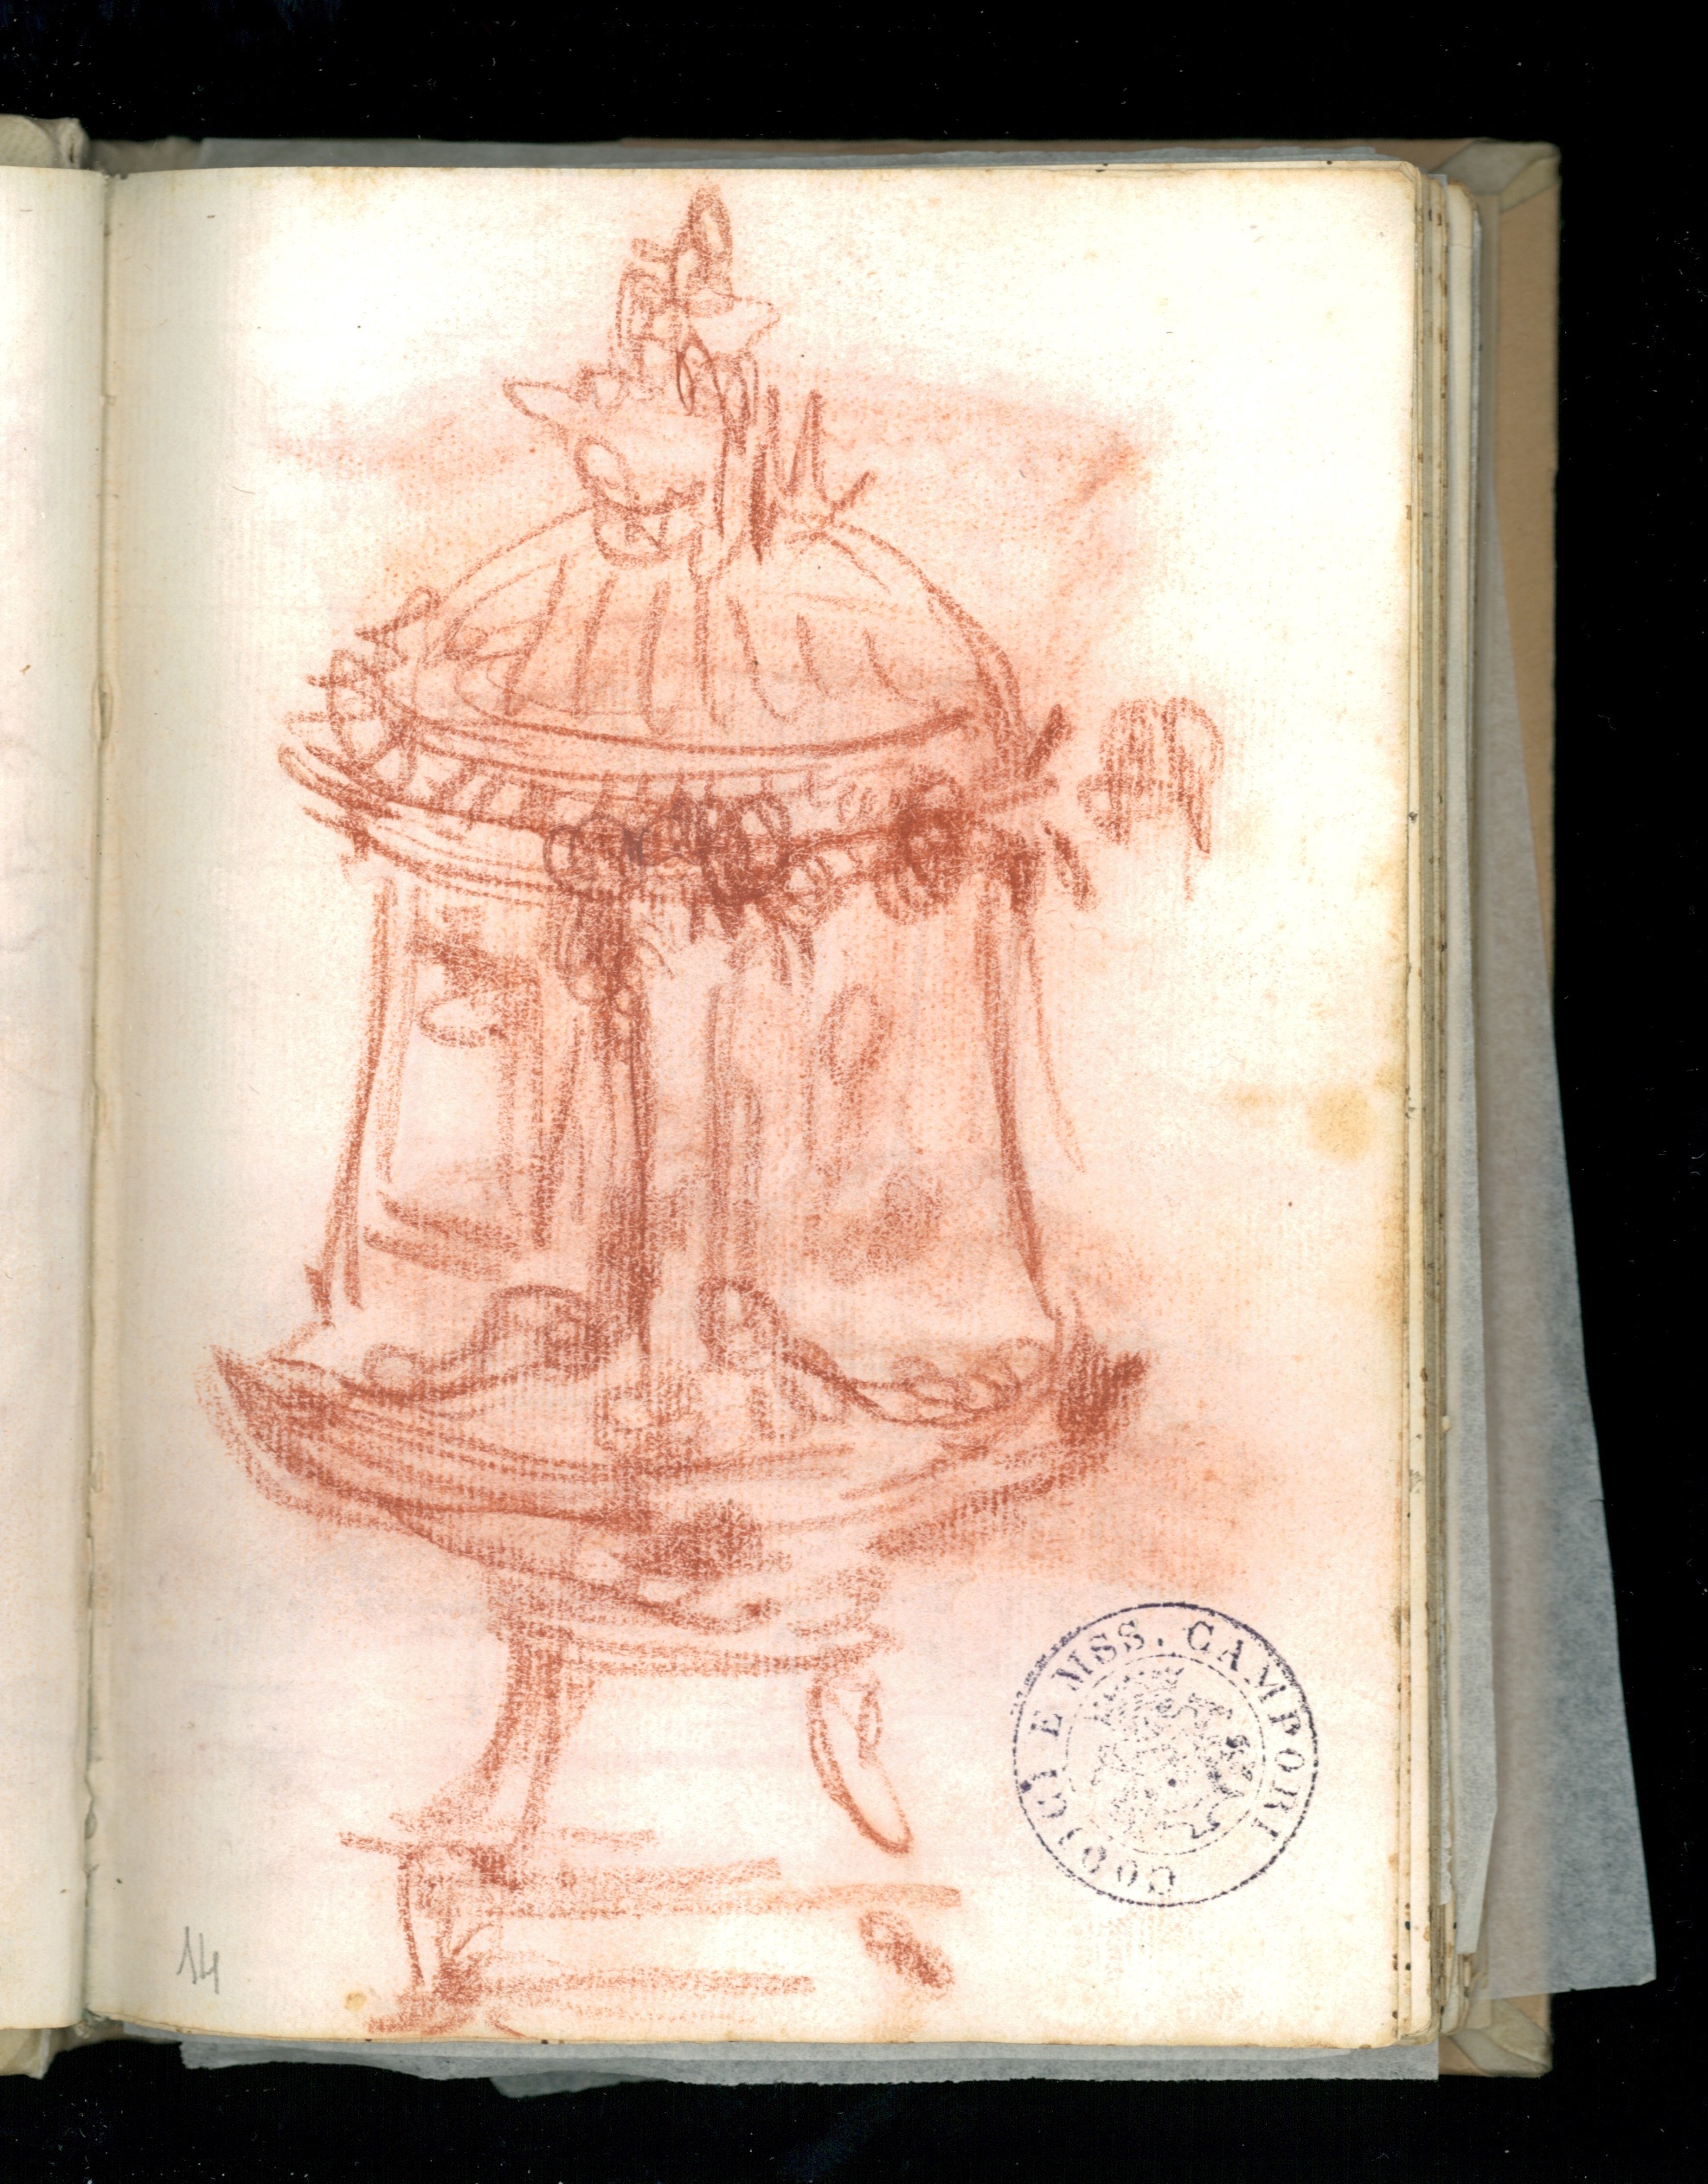 Skizze einer Vase mit Röterl gemalt